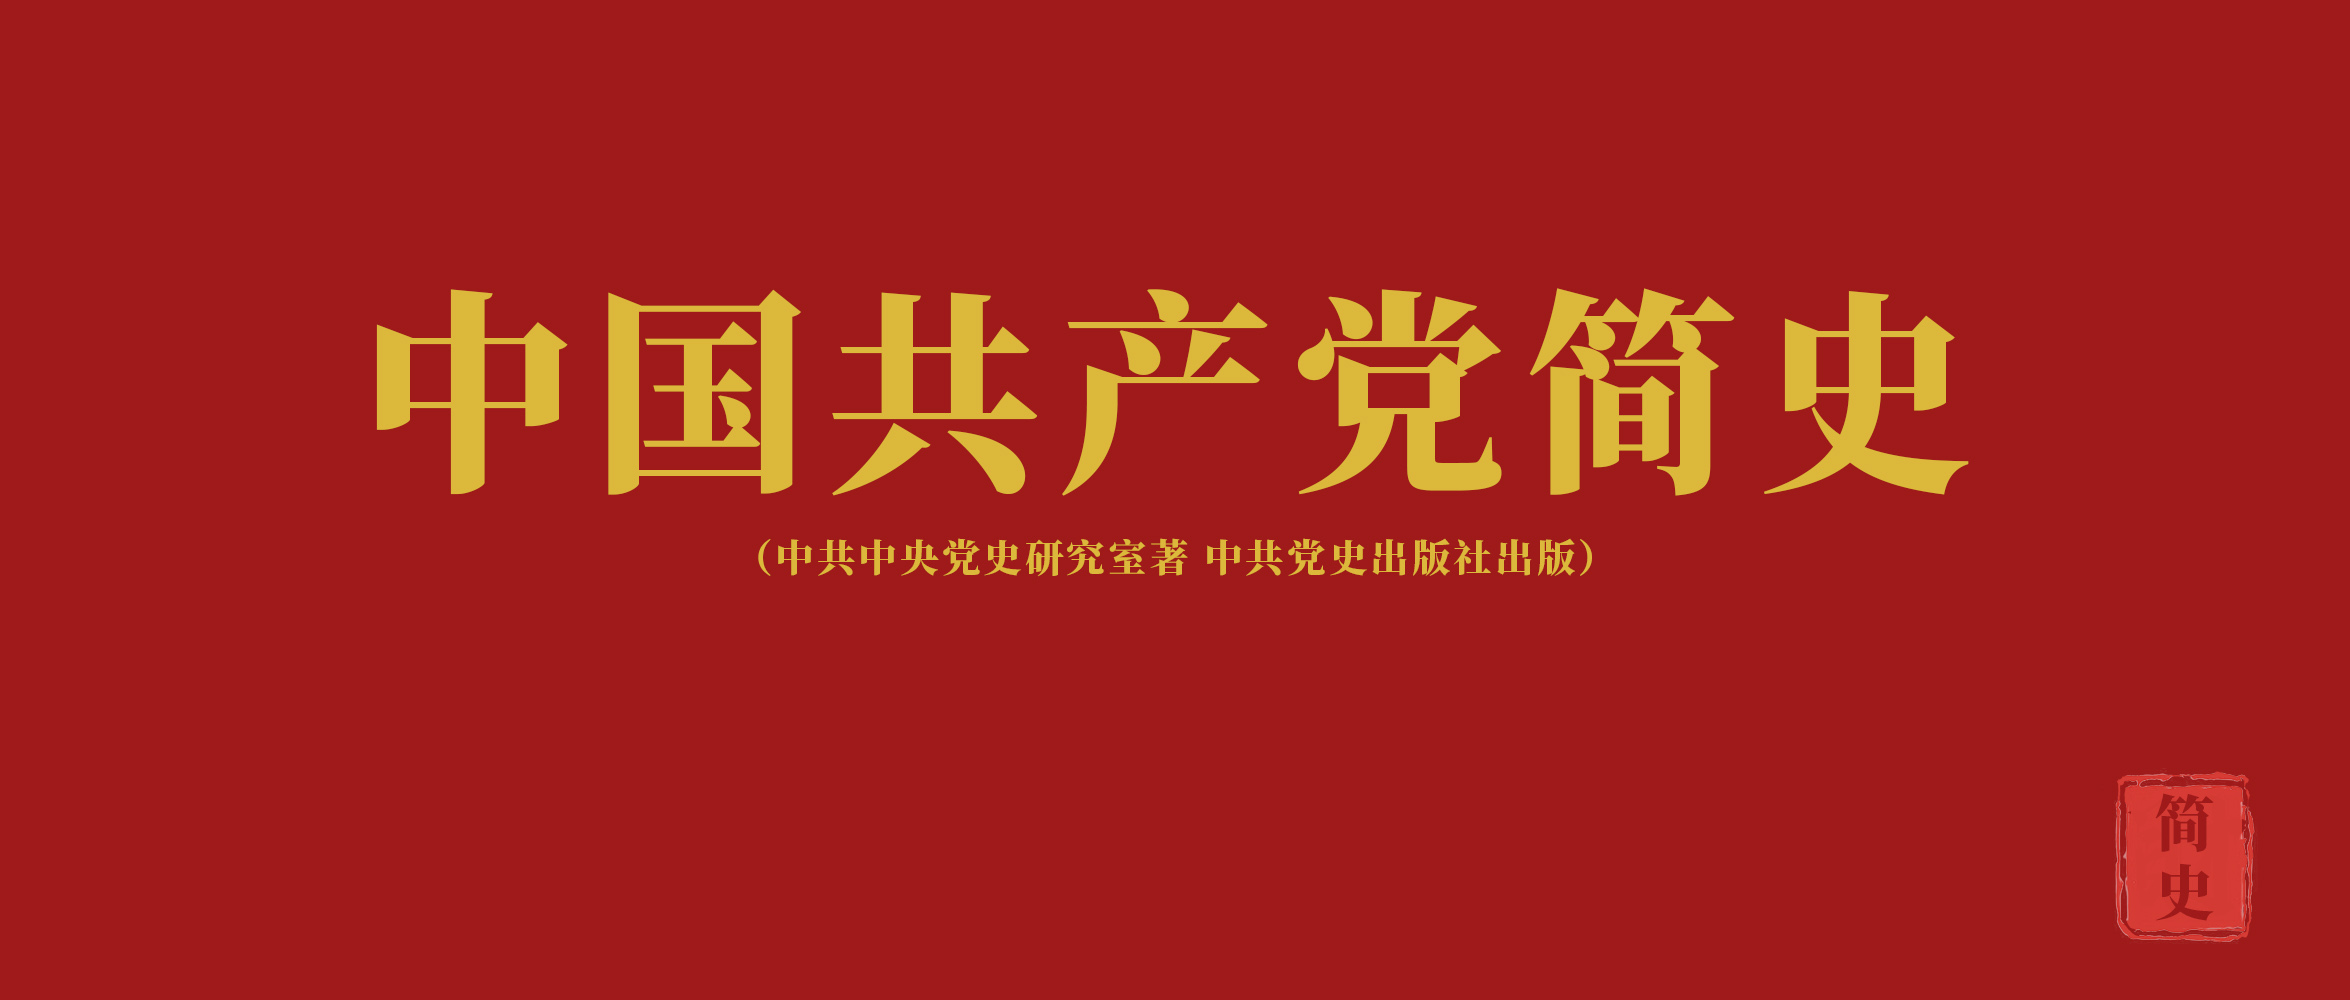 《中国共产党简史》第八章十一届三中全会开辟社会主义事业发展新时期